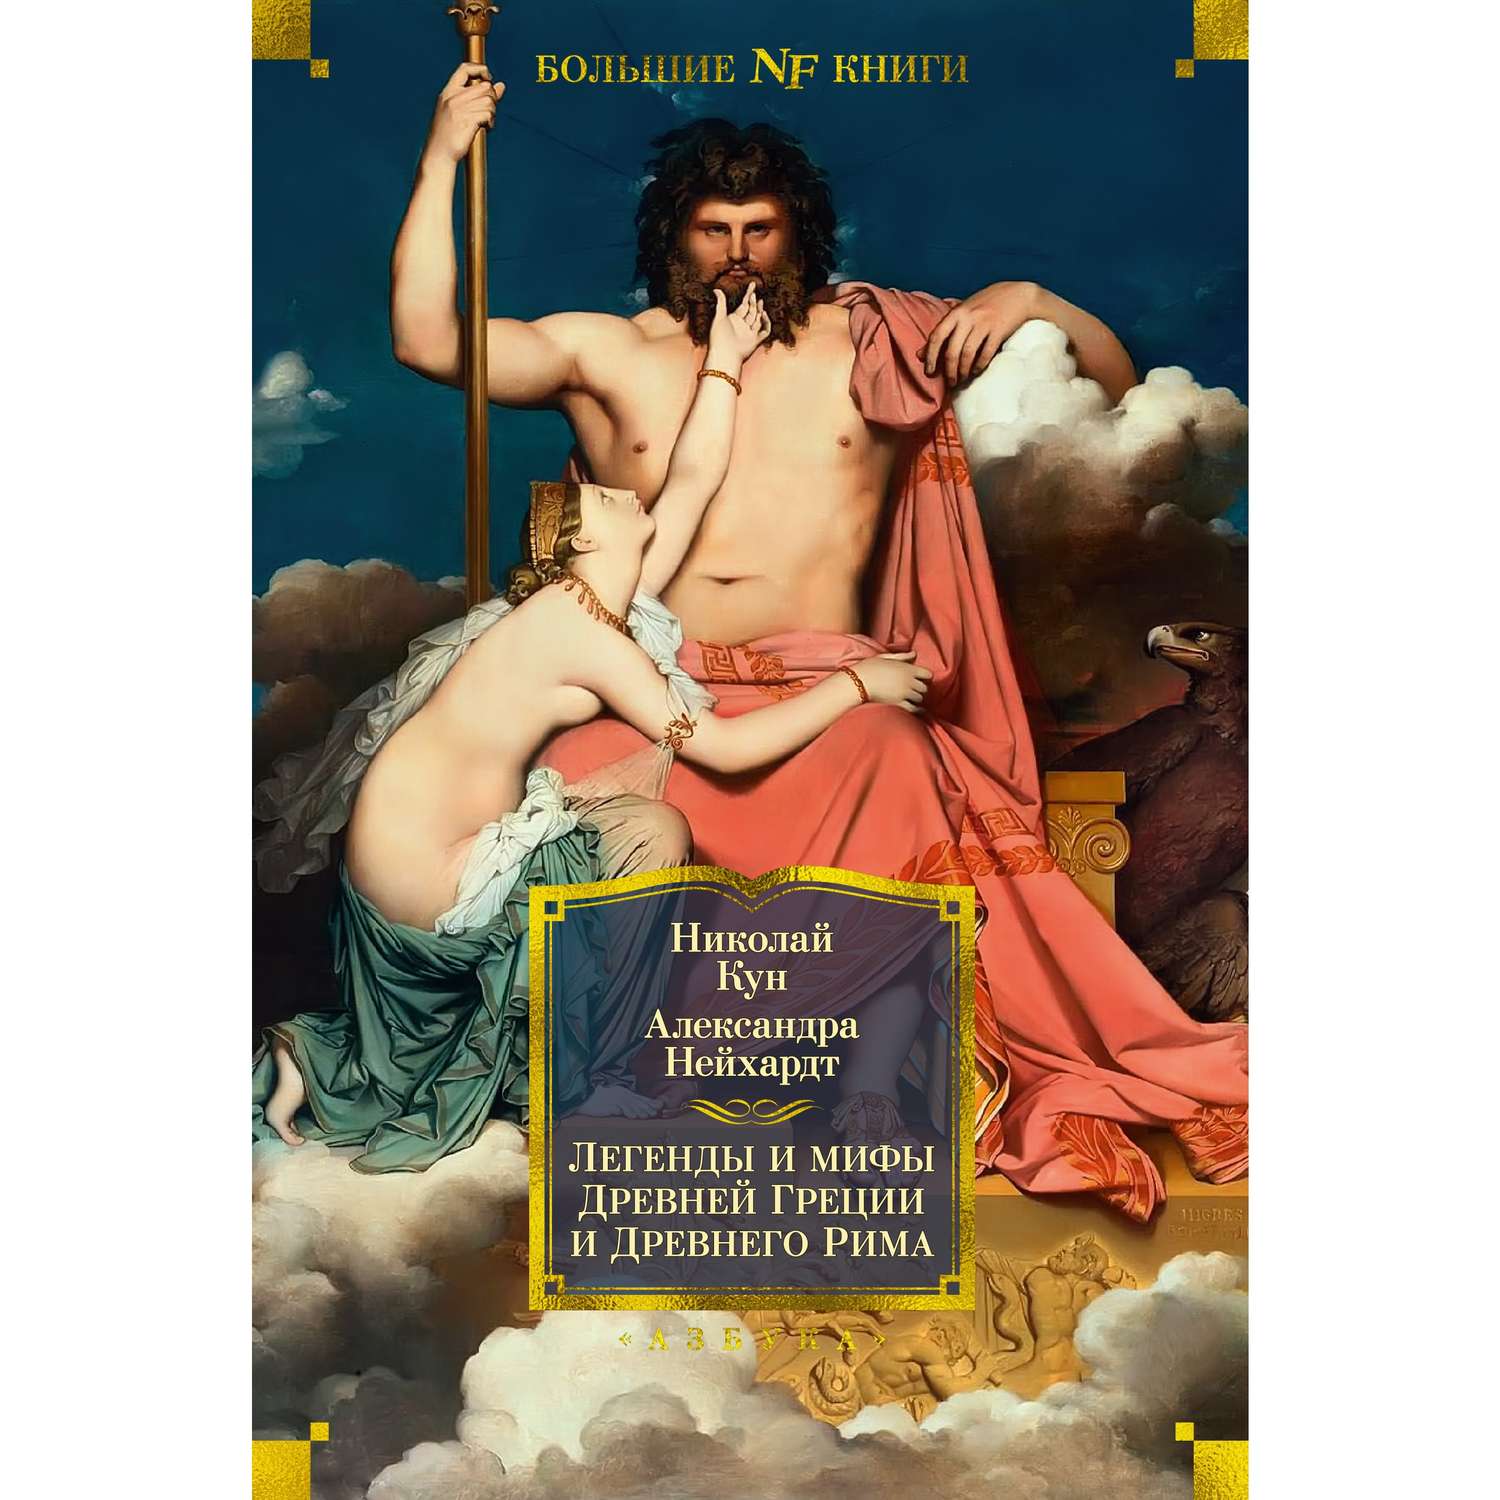 Книга АЗБУКА Легенды и мифы Древней Греции и Древнего Рима - фото 13